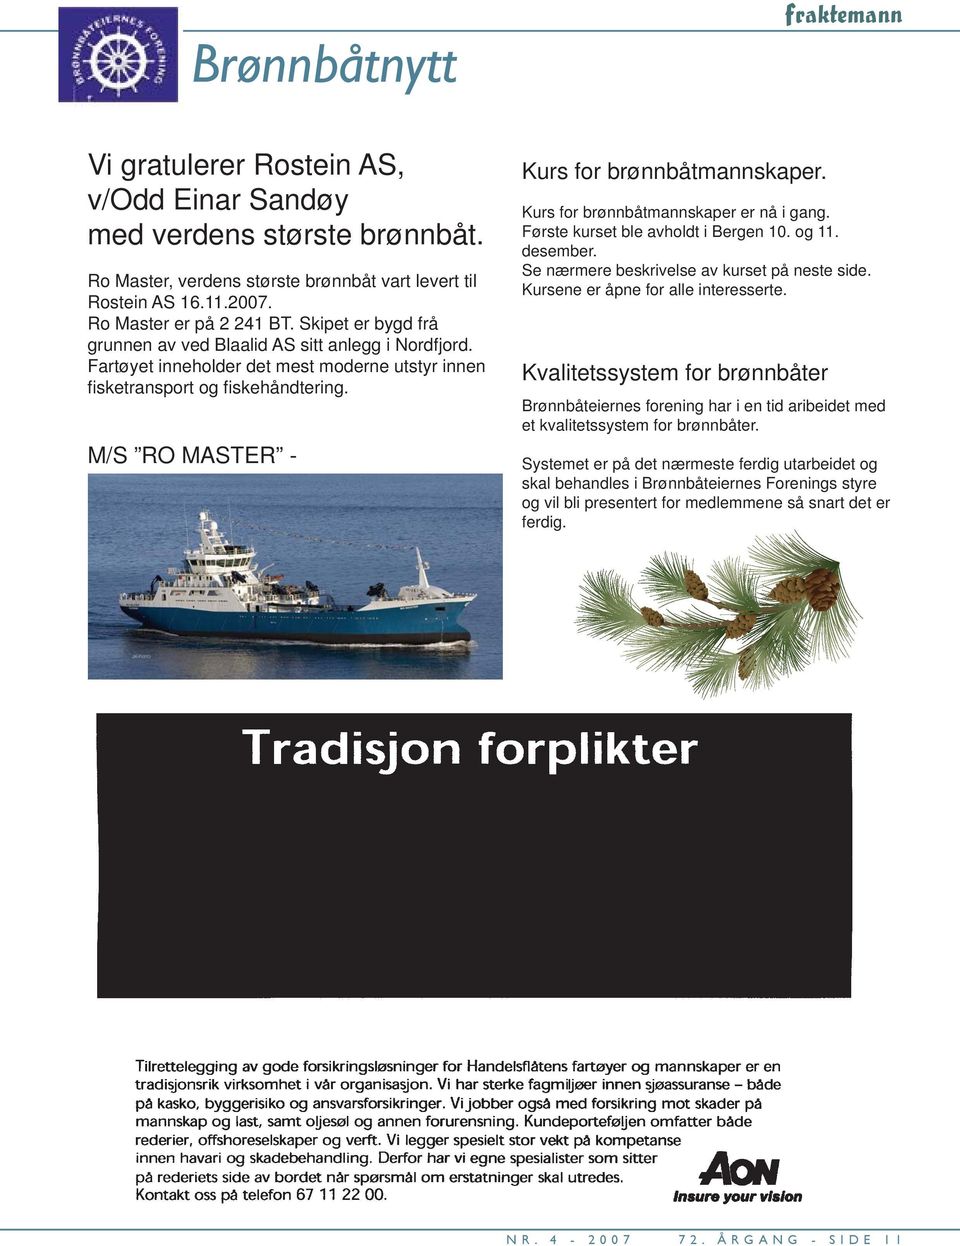 M/S RO MASTER - Kurs for brønnbåtmannskaper. Kurs for brønnbåtmannskaper er nå i gang. Første kurset ble avholdt i Bergen 10. og 11. desember. Se nærmere beskrivelse av kurset på neste side.